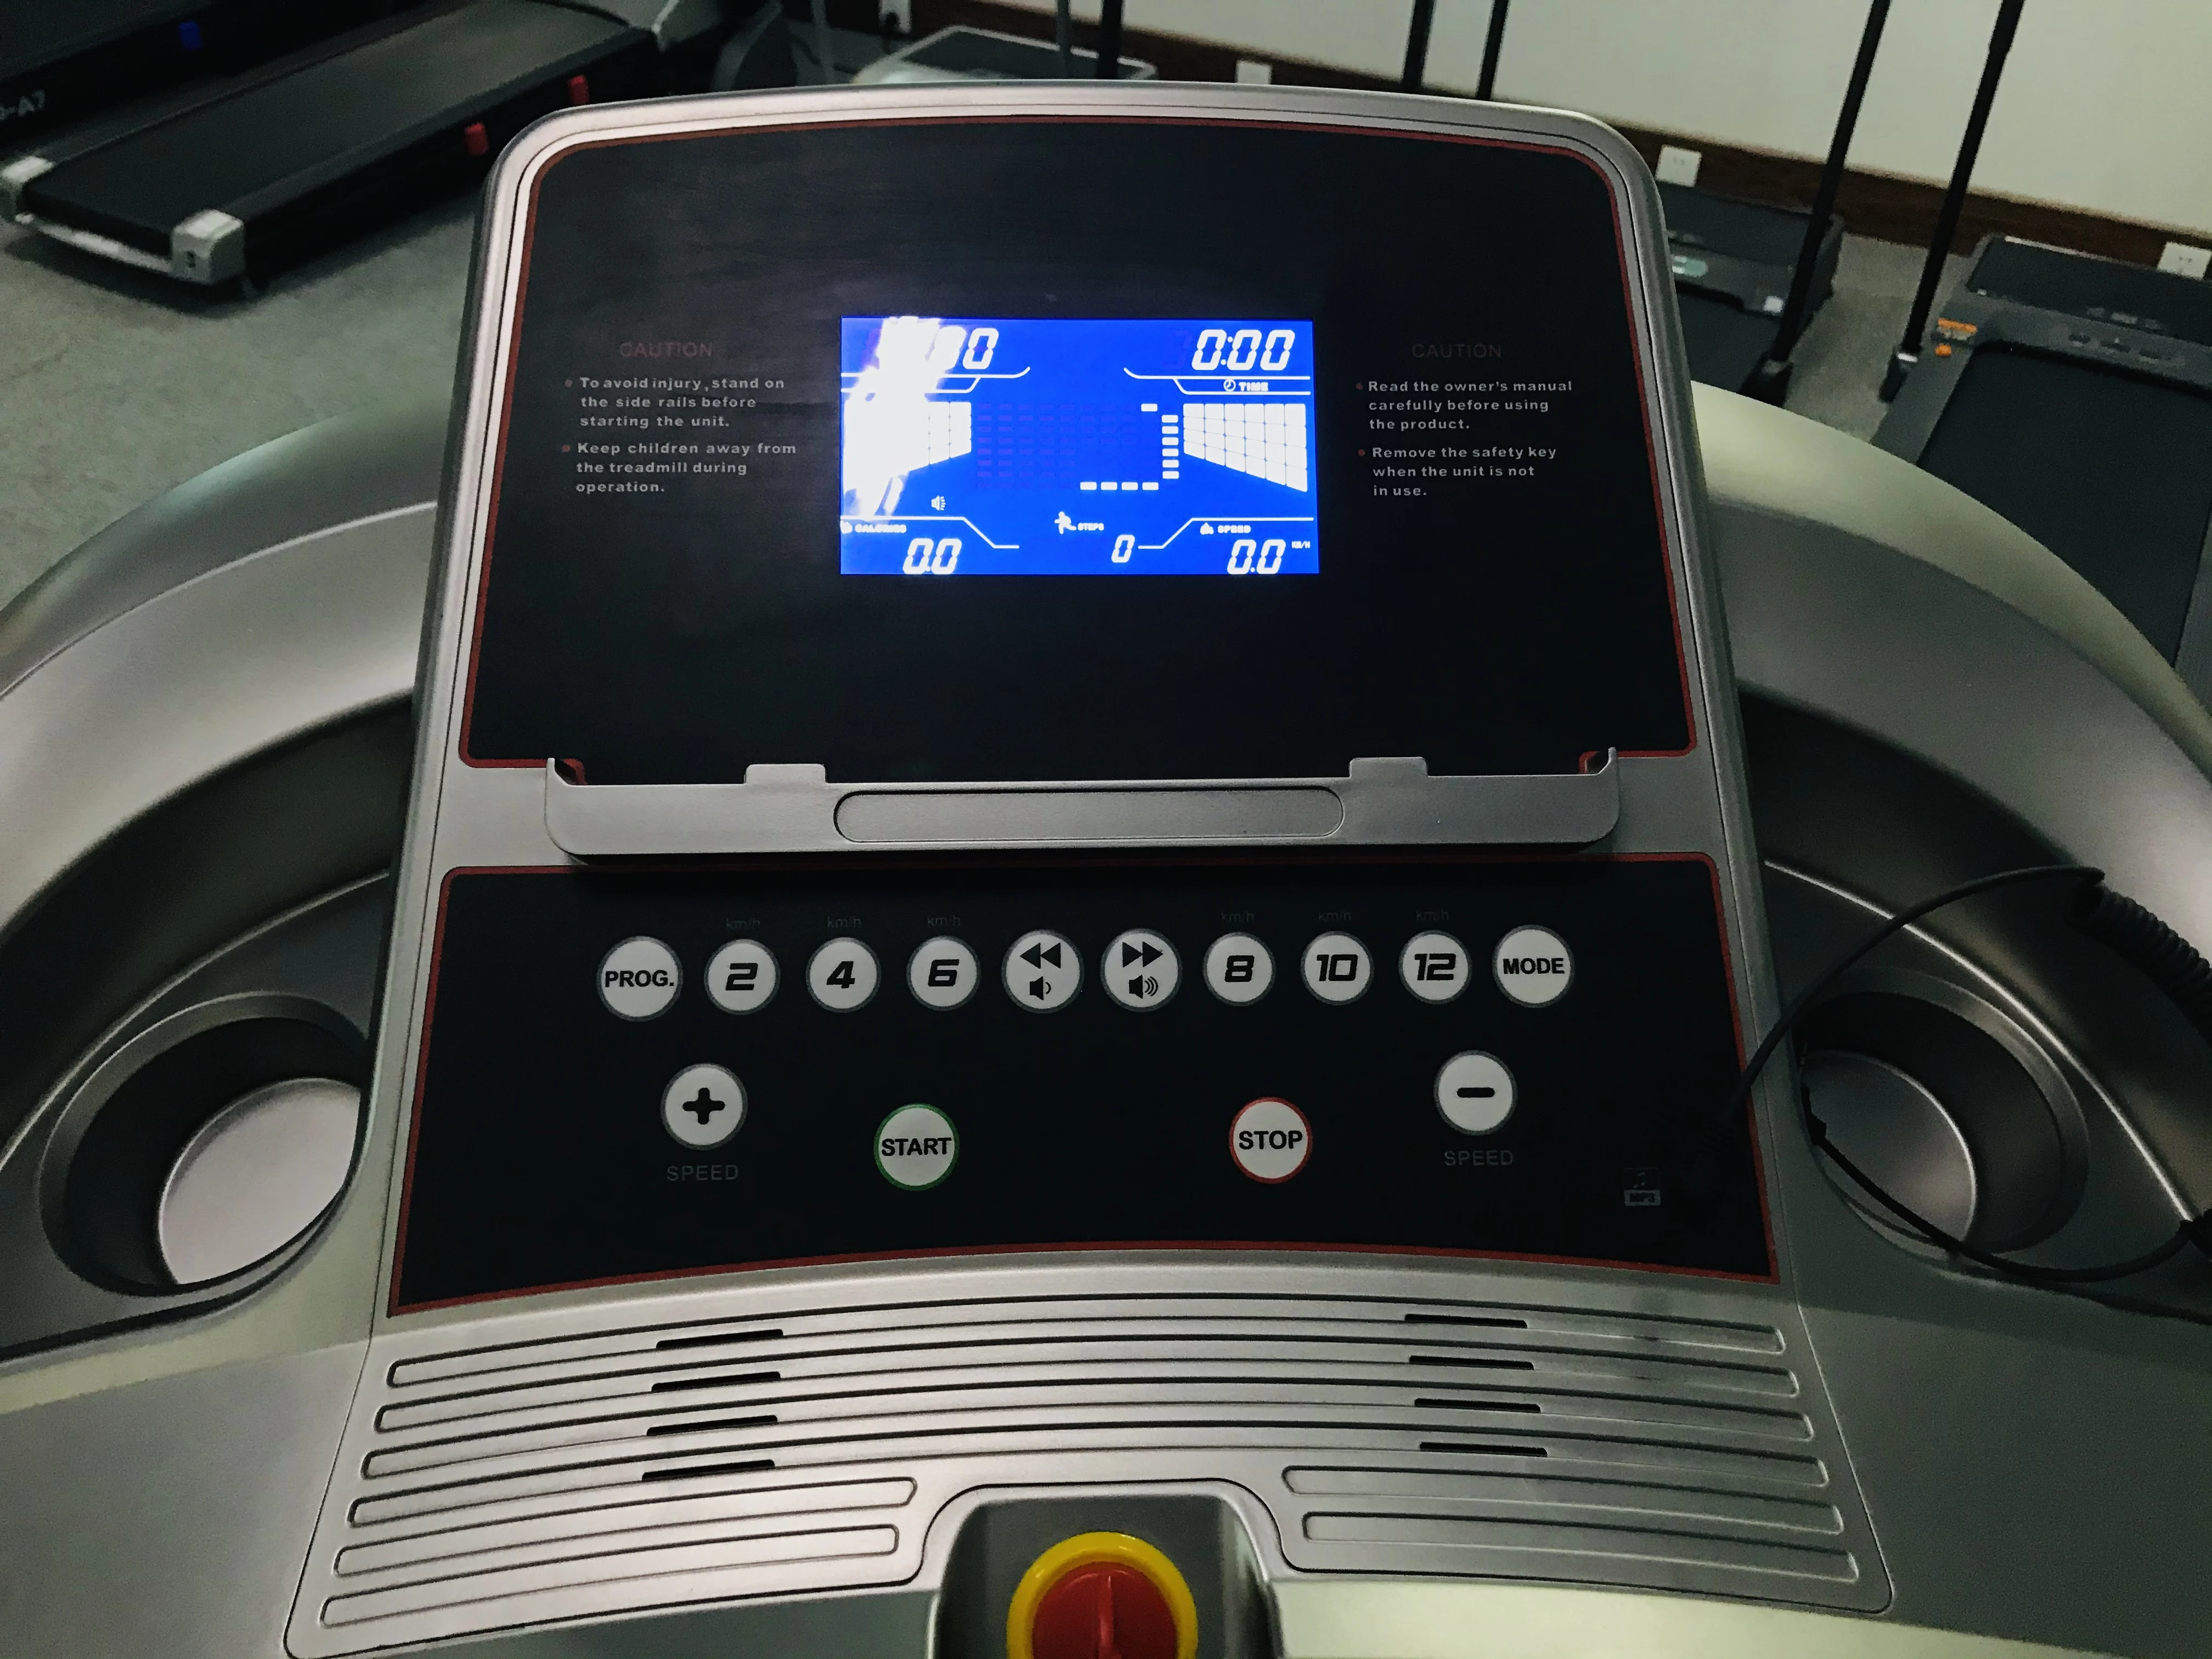 Ciapo fitness sale treadmill buy motorized treadmill